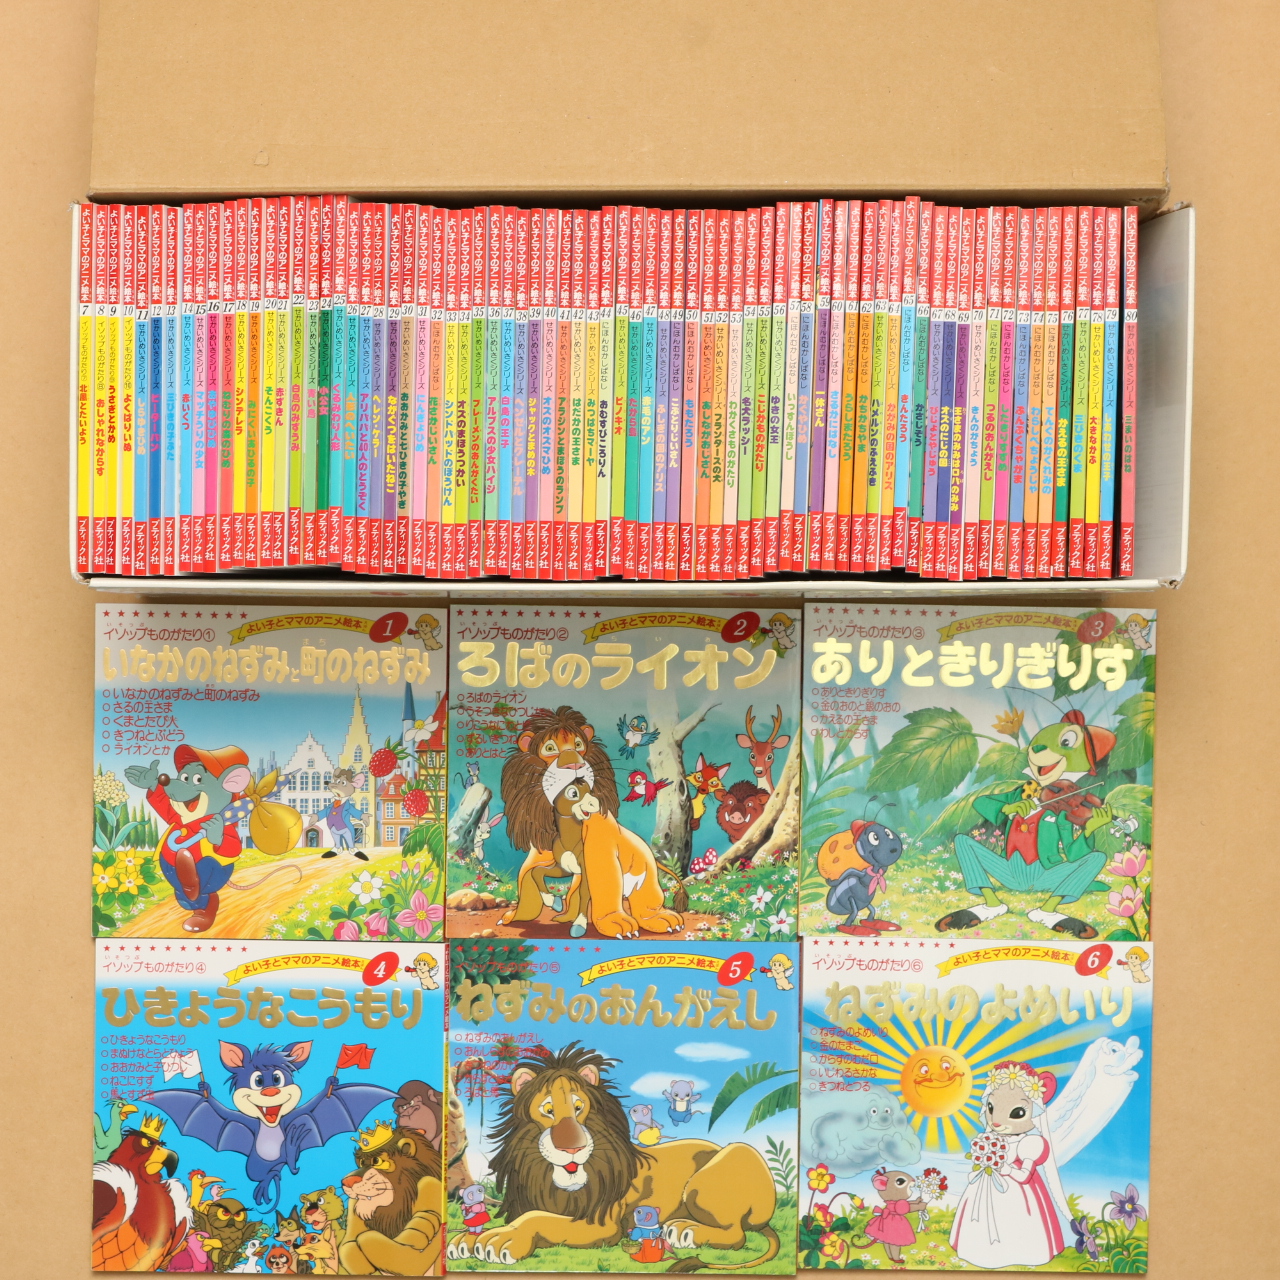 世界の名作童話 全80巻完結セット よい子とママのアニメ絵本 中古絵本の販売 えほんポケット